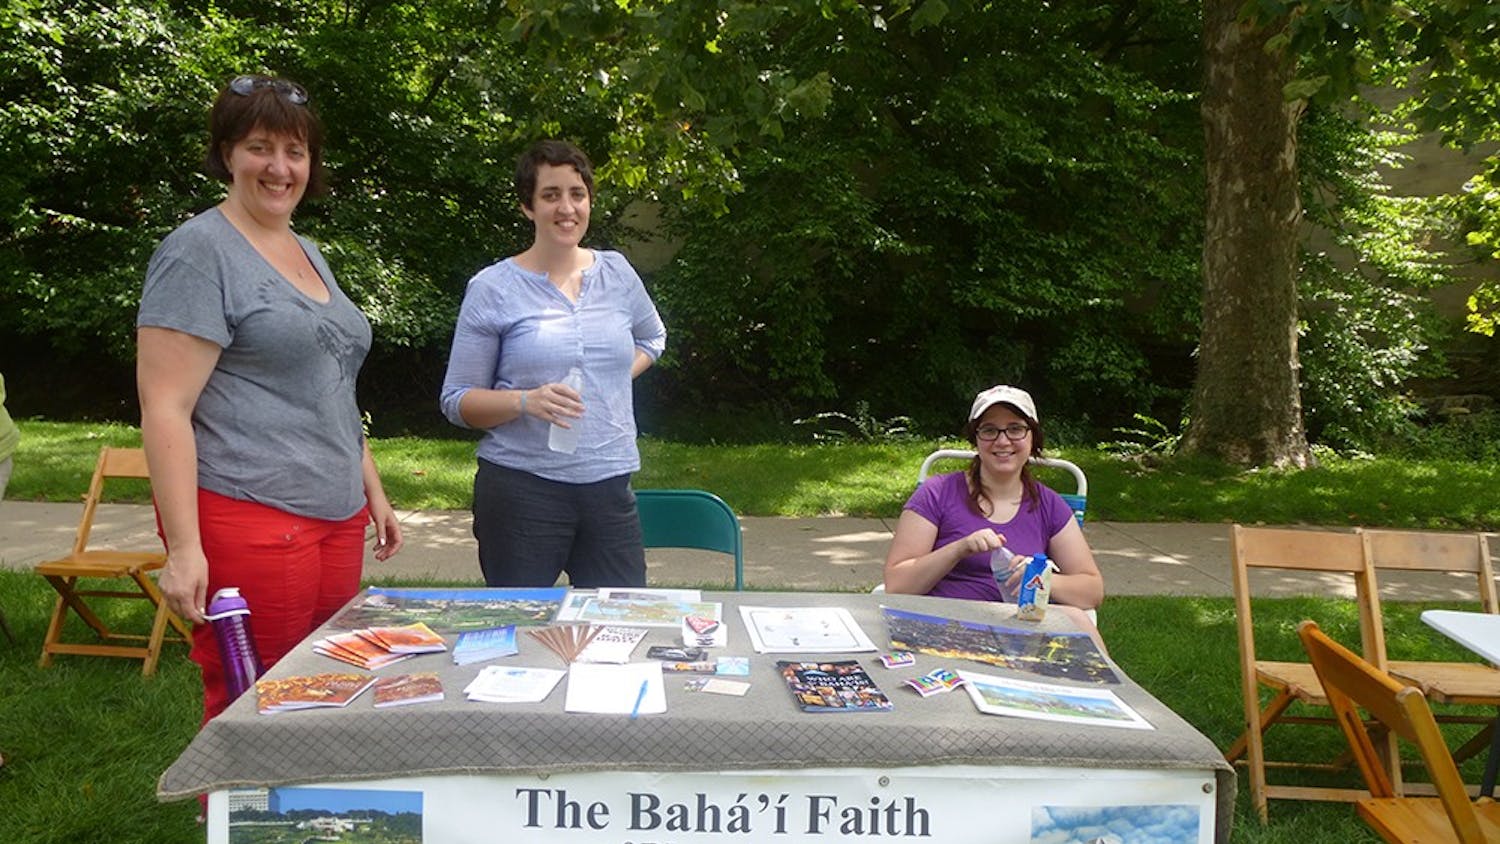 Bahá'í Faith members Sarah Enslow, Ruth Enslow and IU Alum Natalie Bantz represent the Bahá'í Faith of Bloomington center at Faith Fest. The Bahá'í Faith of Bloomington center offers weekly devotion to community members every Sunday at 10:30am.